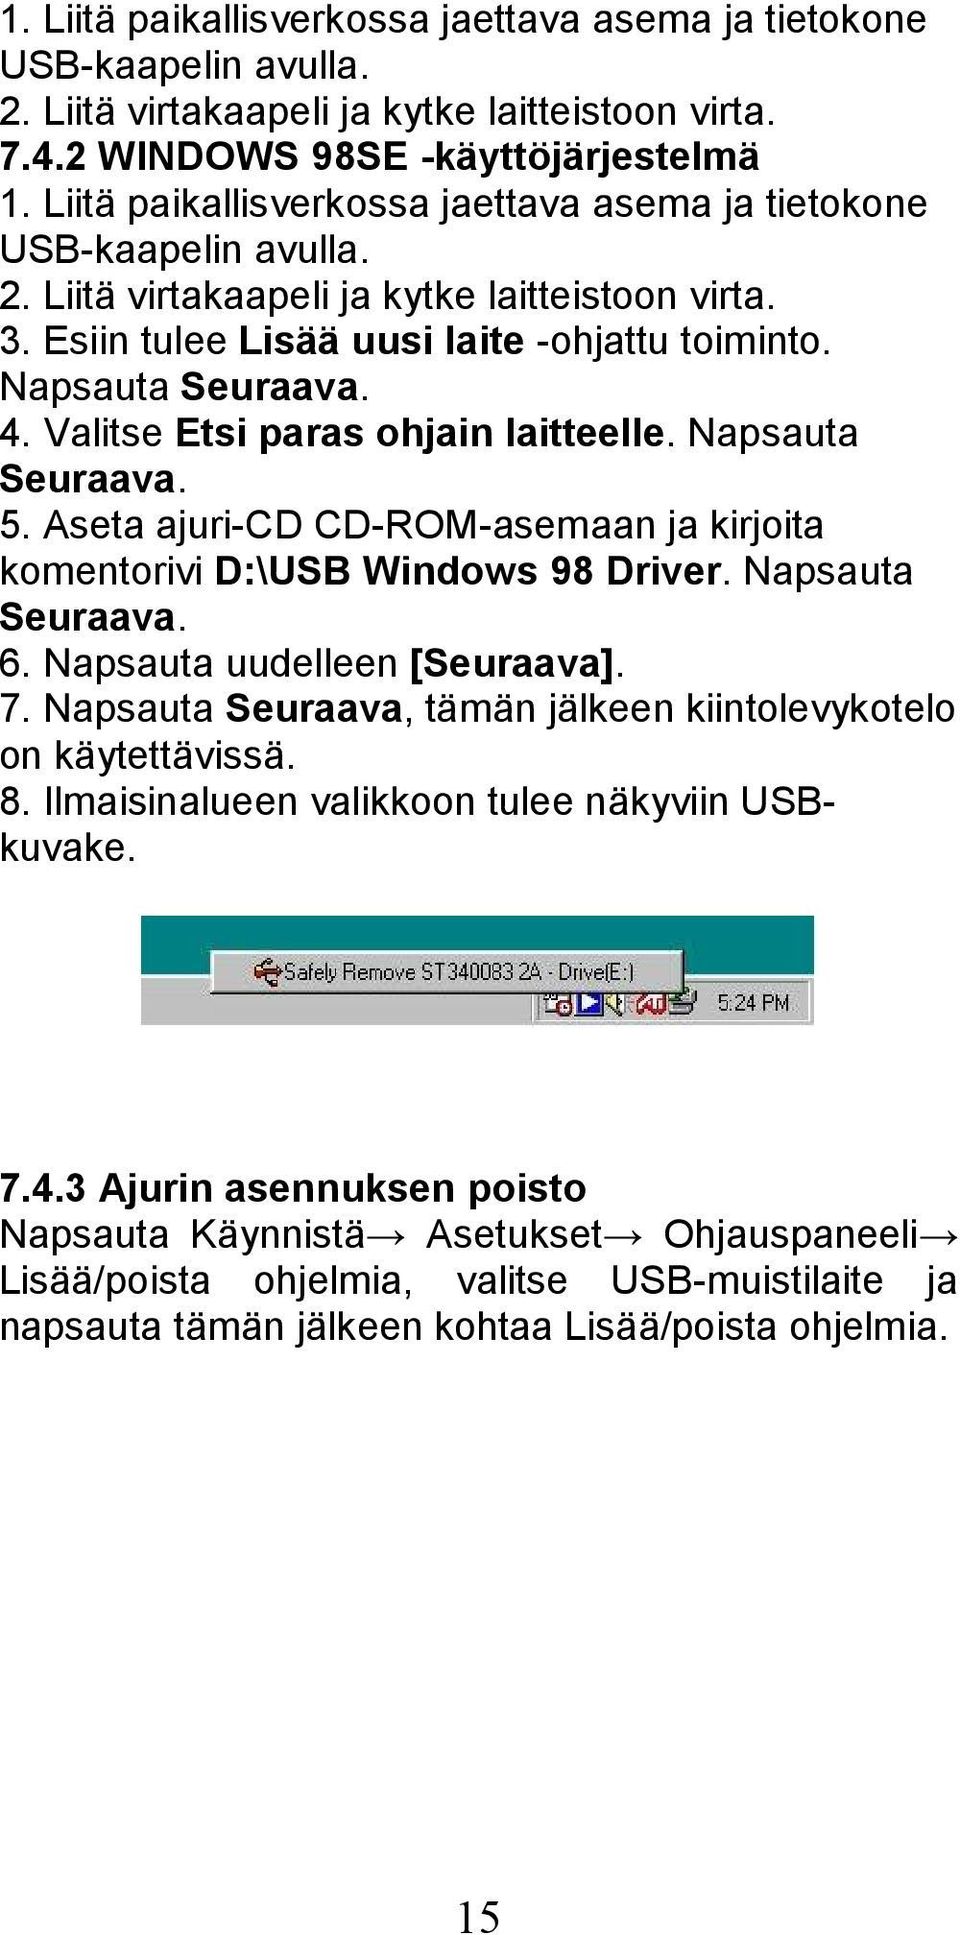 Valitse Etsi paras ohjain laitteelle. Napsauta Seuraava. 5. Aseta ajuri-cd CD-ROM-asemaan ja kirjoita komentorivi D:\USB Windows 98 Driver. Napsauta Seuraava. 6. Napsauta uudelleen [Seuraava]. 7.